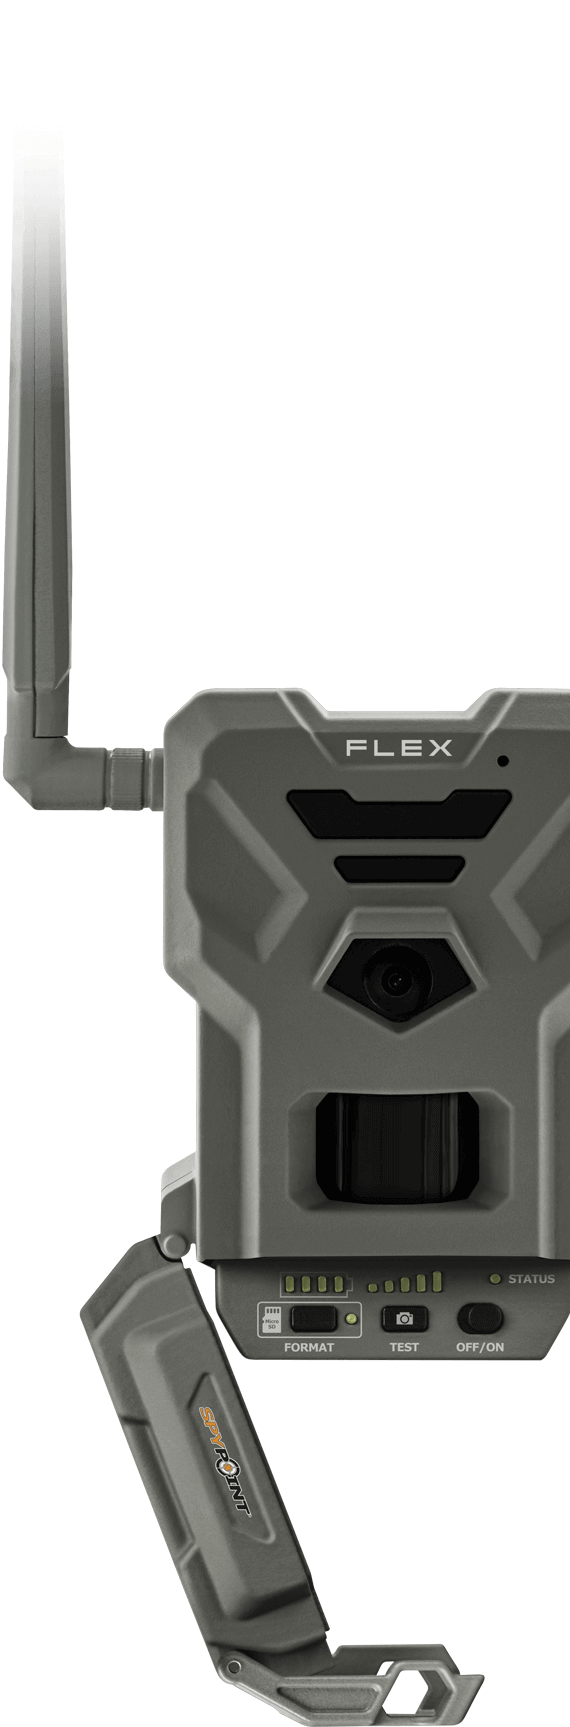 FLEX open